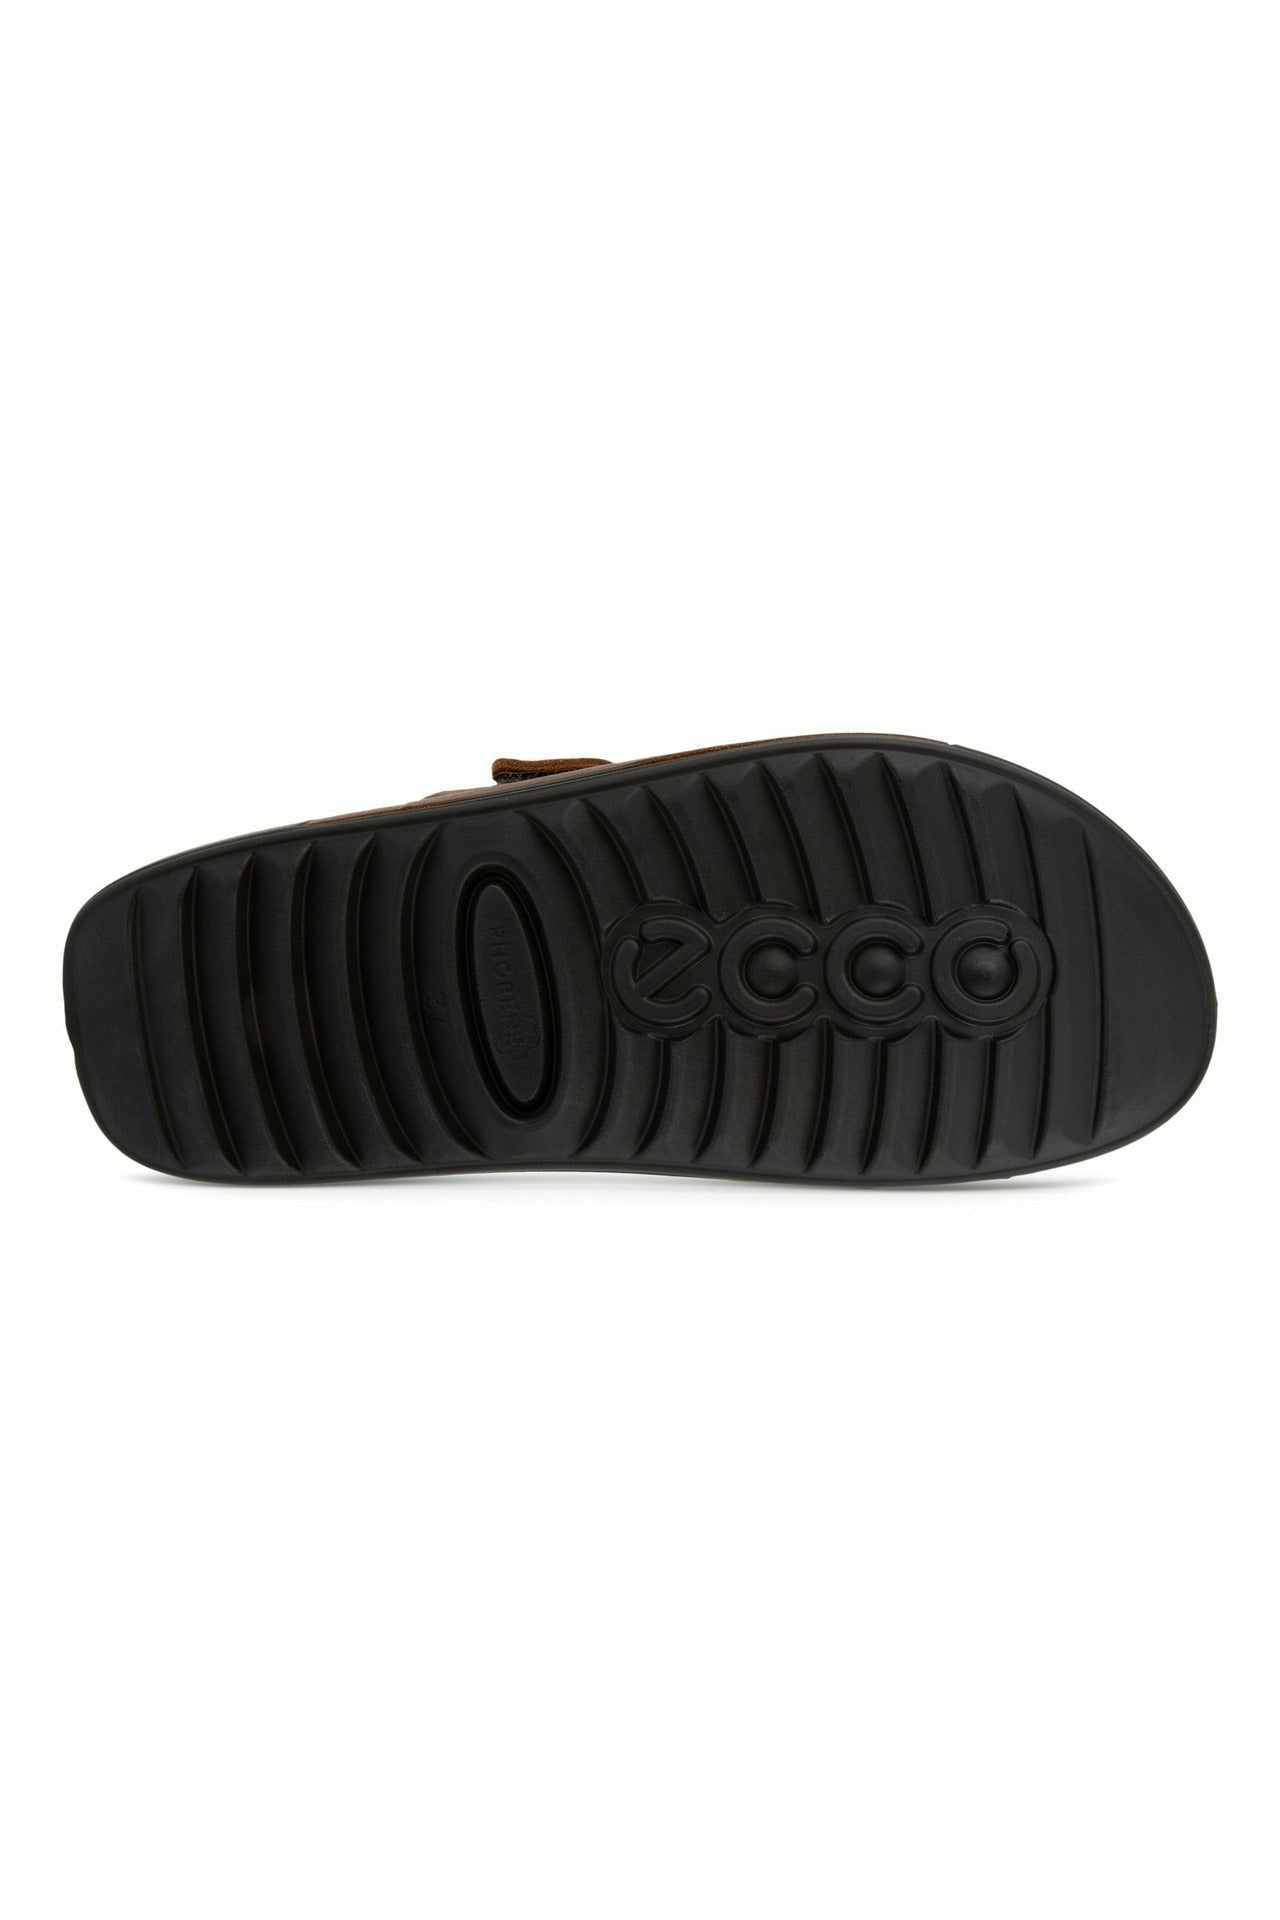 ECCO Cozmo 500904-02178 mens sandal in brown